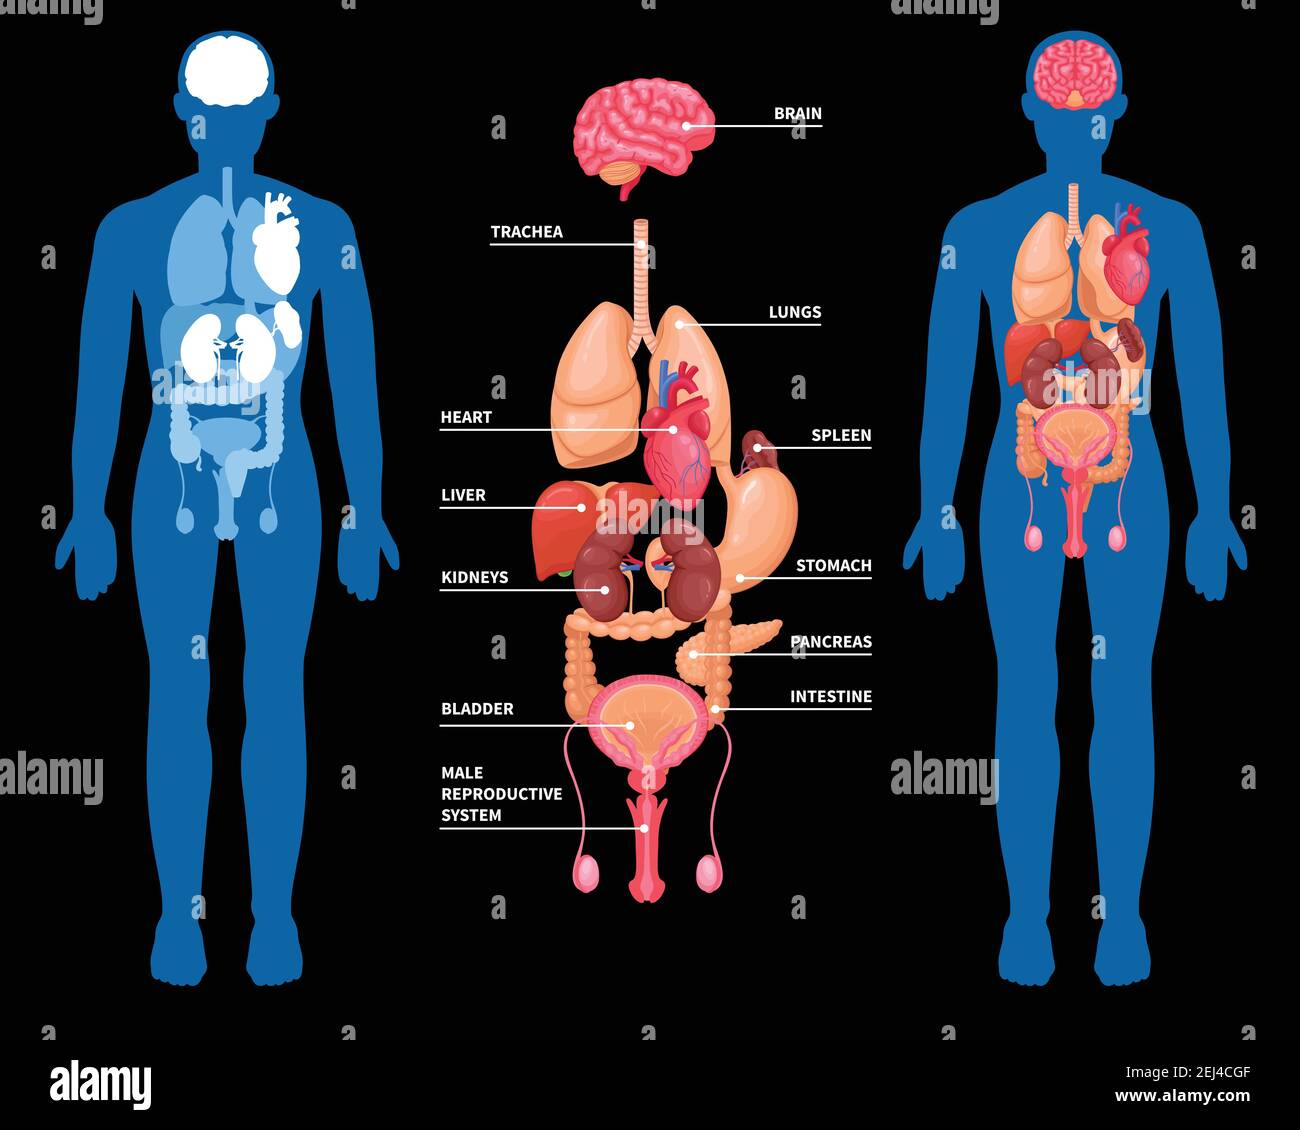 Disposition De L Anatomie Humaine Des Organes Internes Dans Le Corps